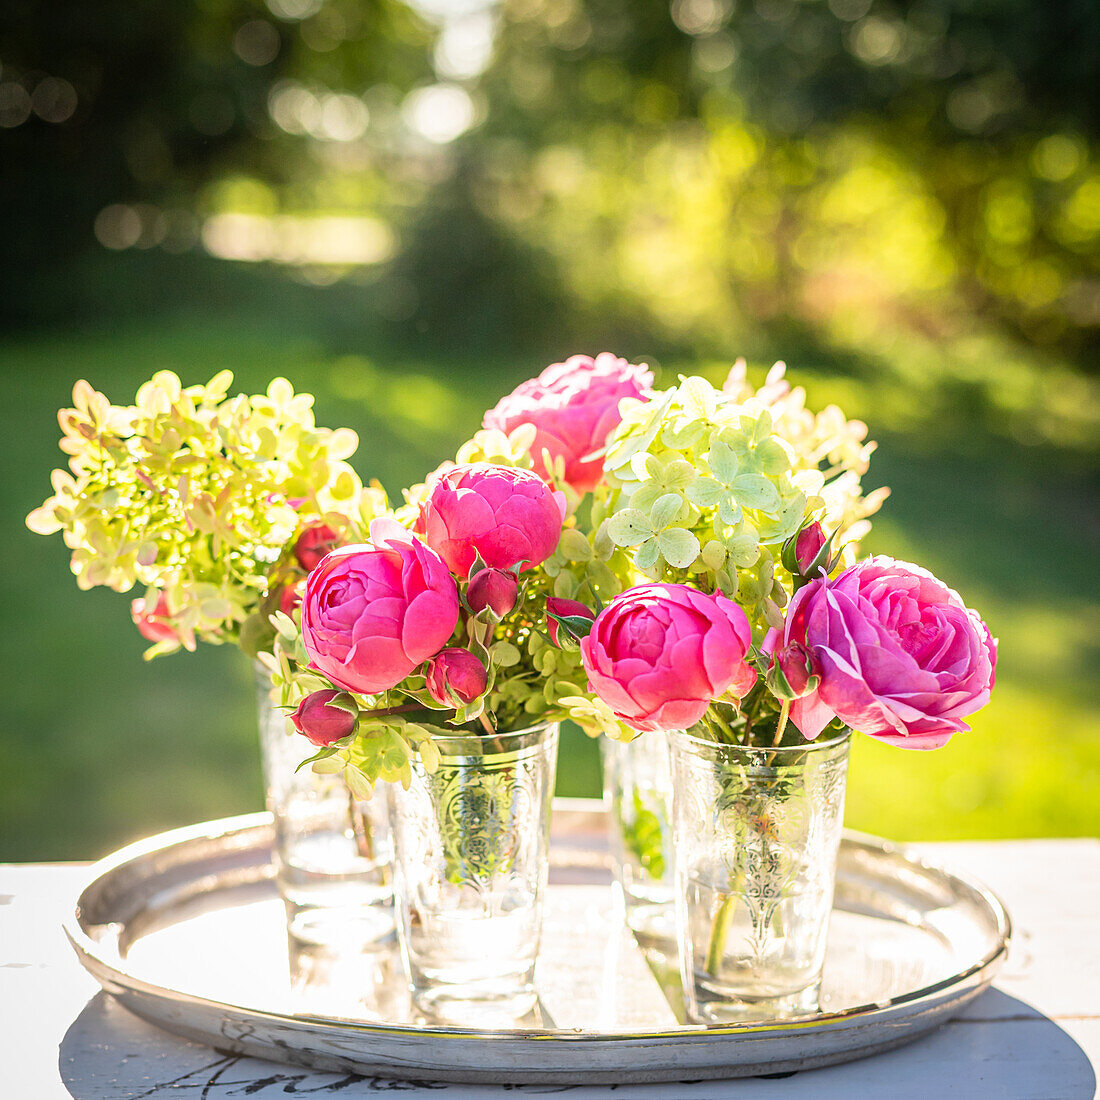 Rosa Rosen und weiße Hortensien in Vasen auf Tablett im Freien